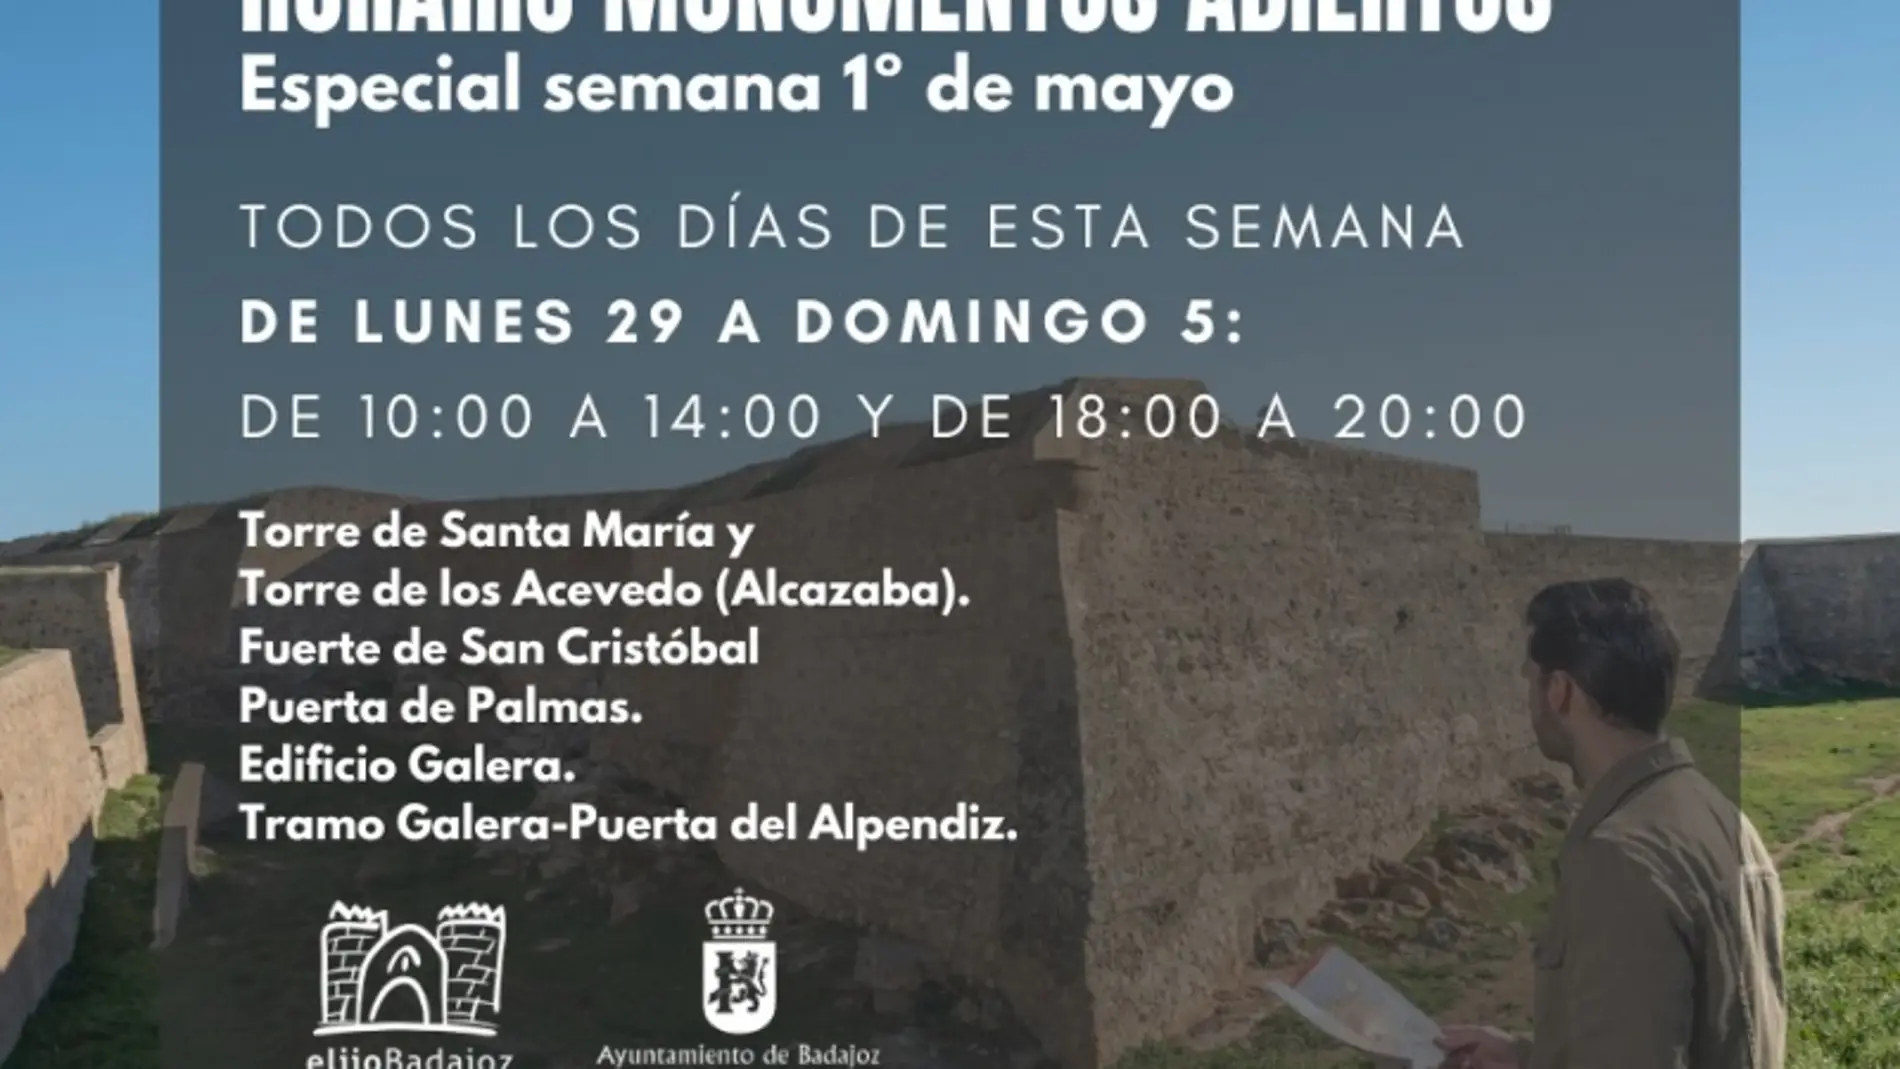 Los monumentos de Badajoz amplían su horario esta semana con motivo de la festividad del 1 de mayo